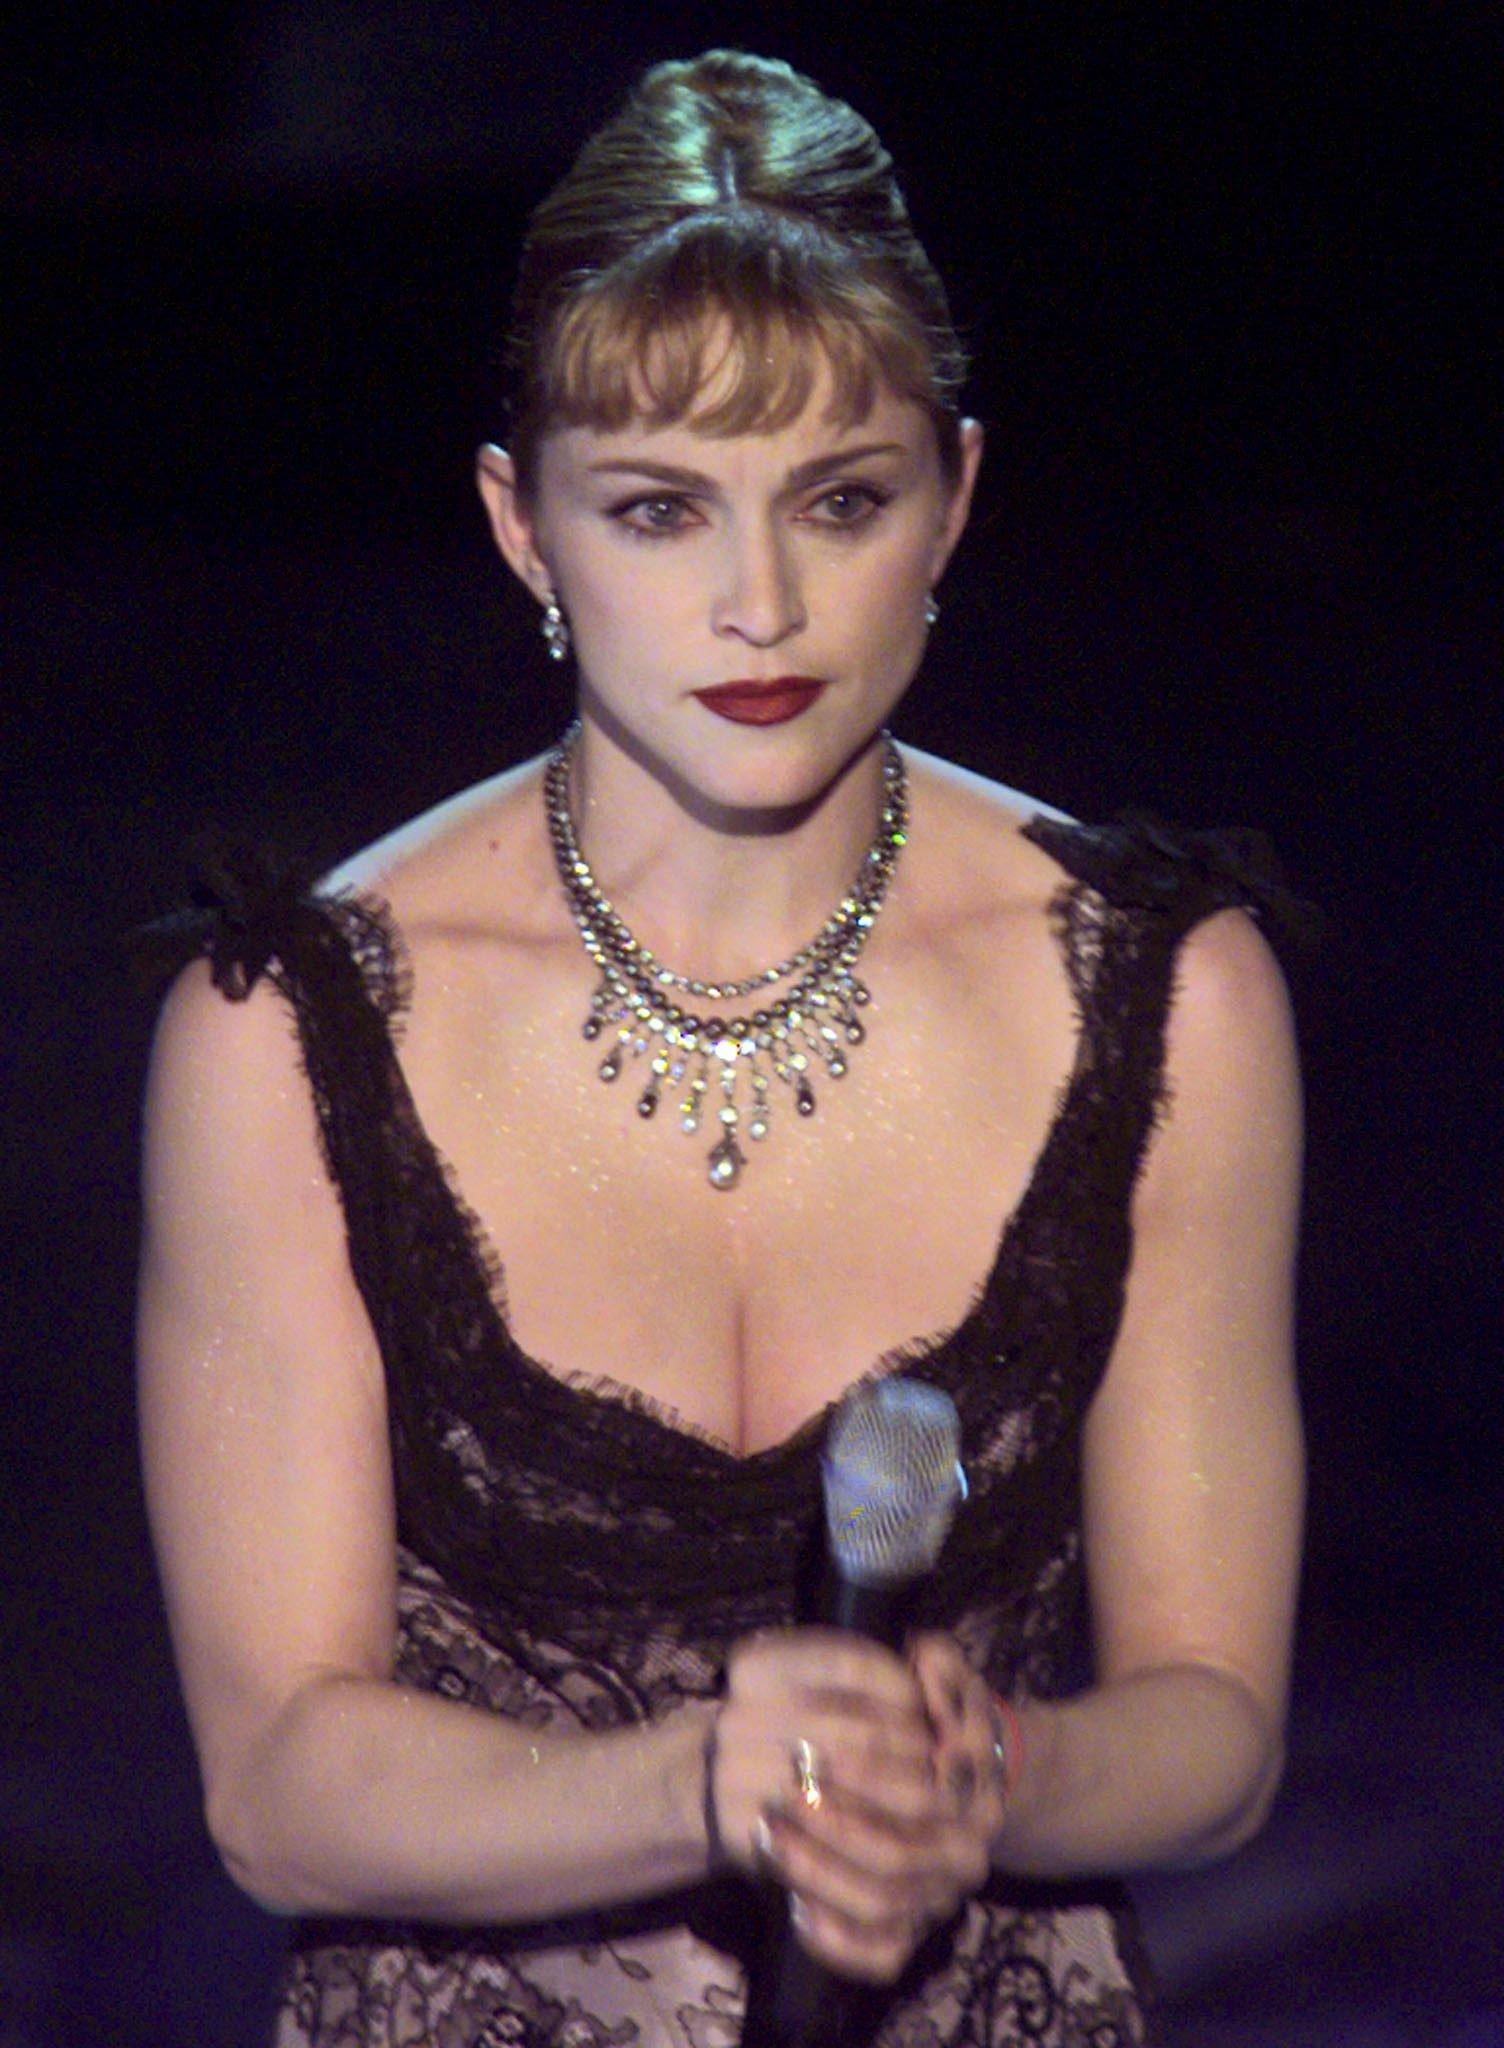 Выпуск фильма «Эвита», в котором Мадонна впечатляет критиков и выигрывает «Золотой глобус» за роль в качестве первой леди Аргентины Евы Перон